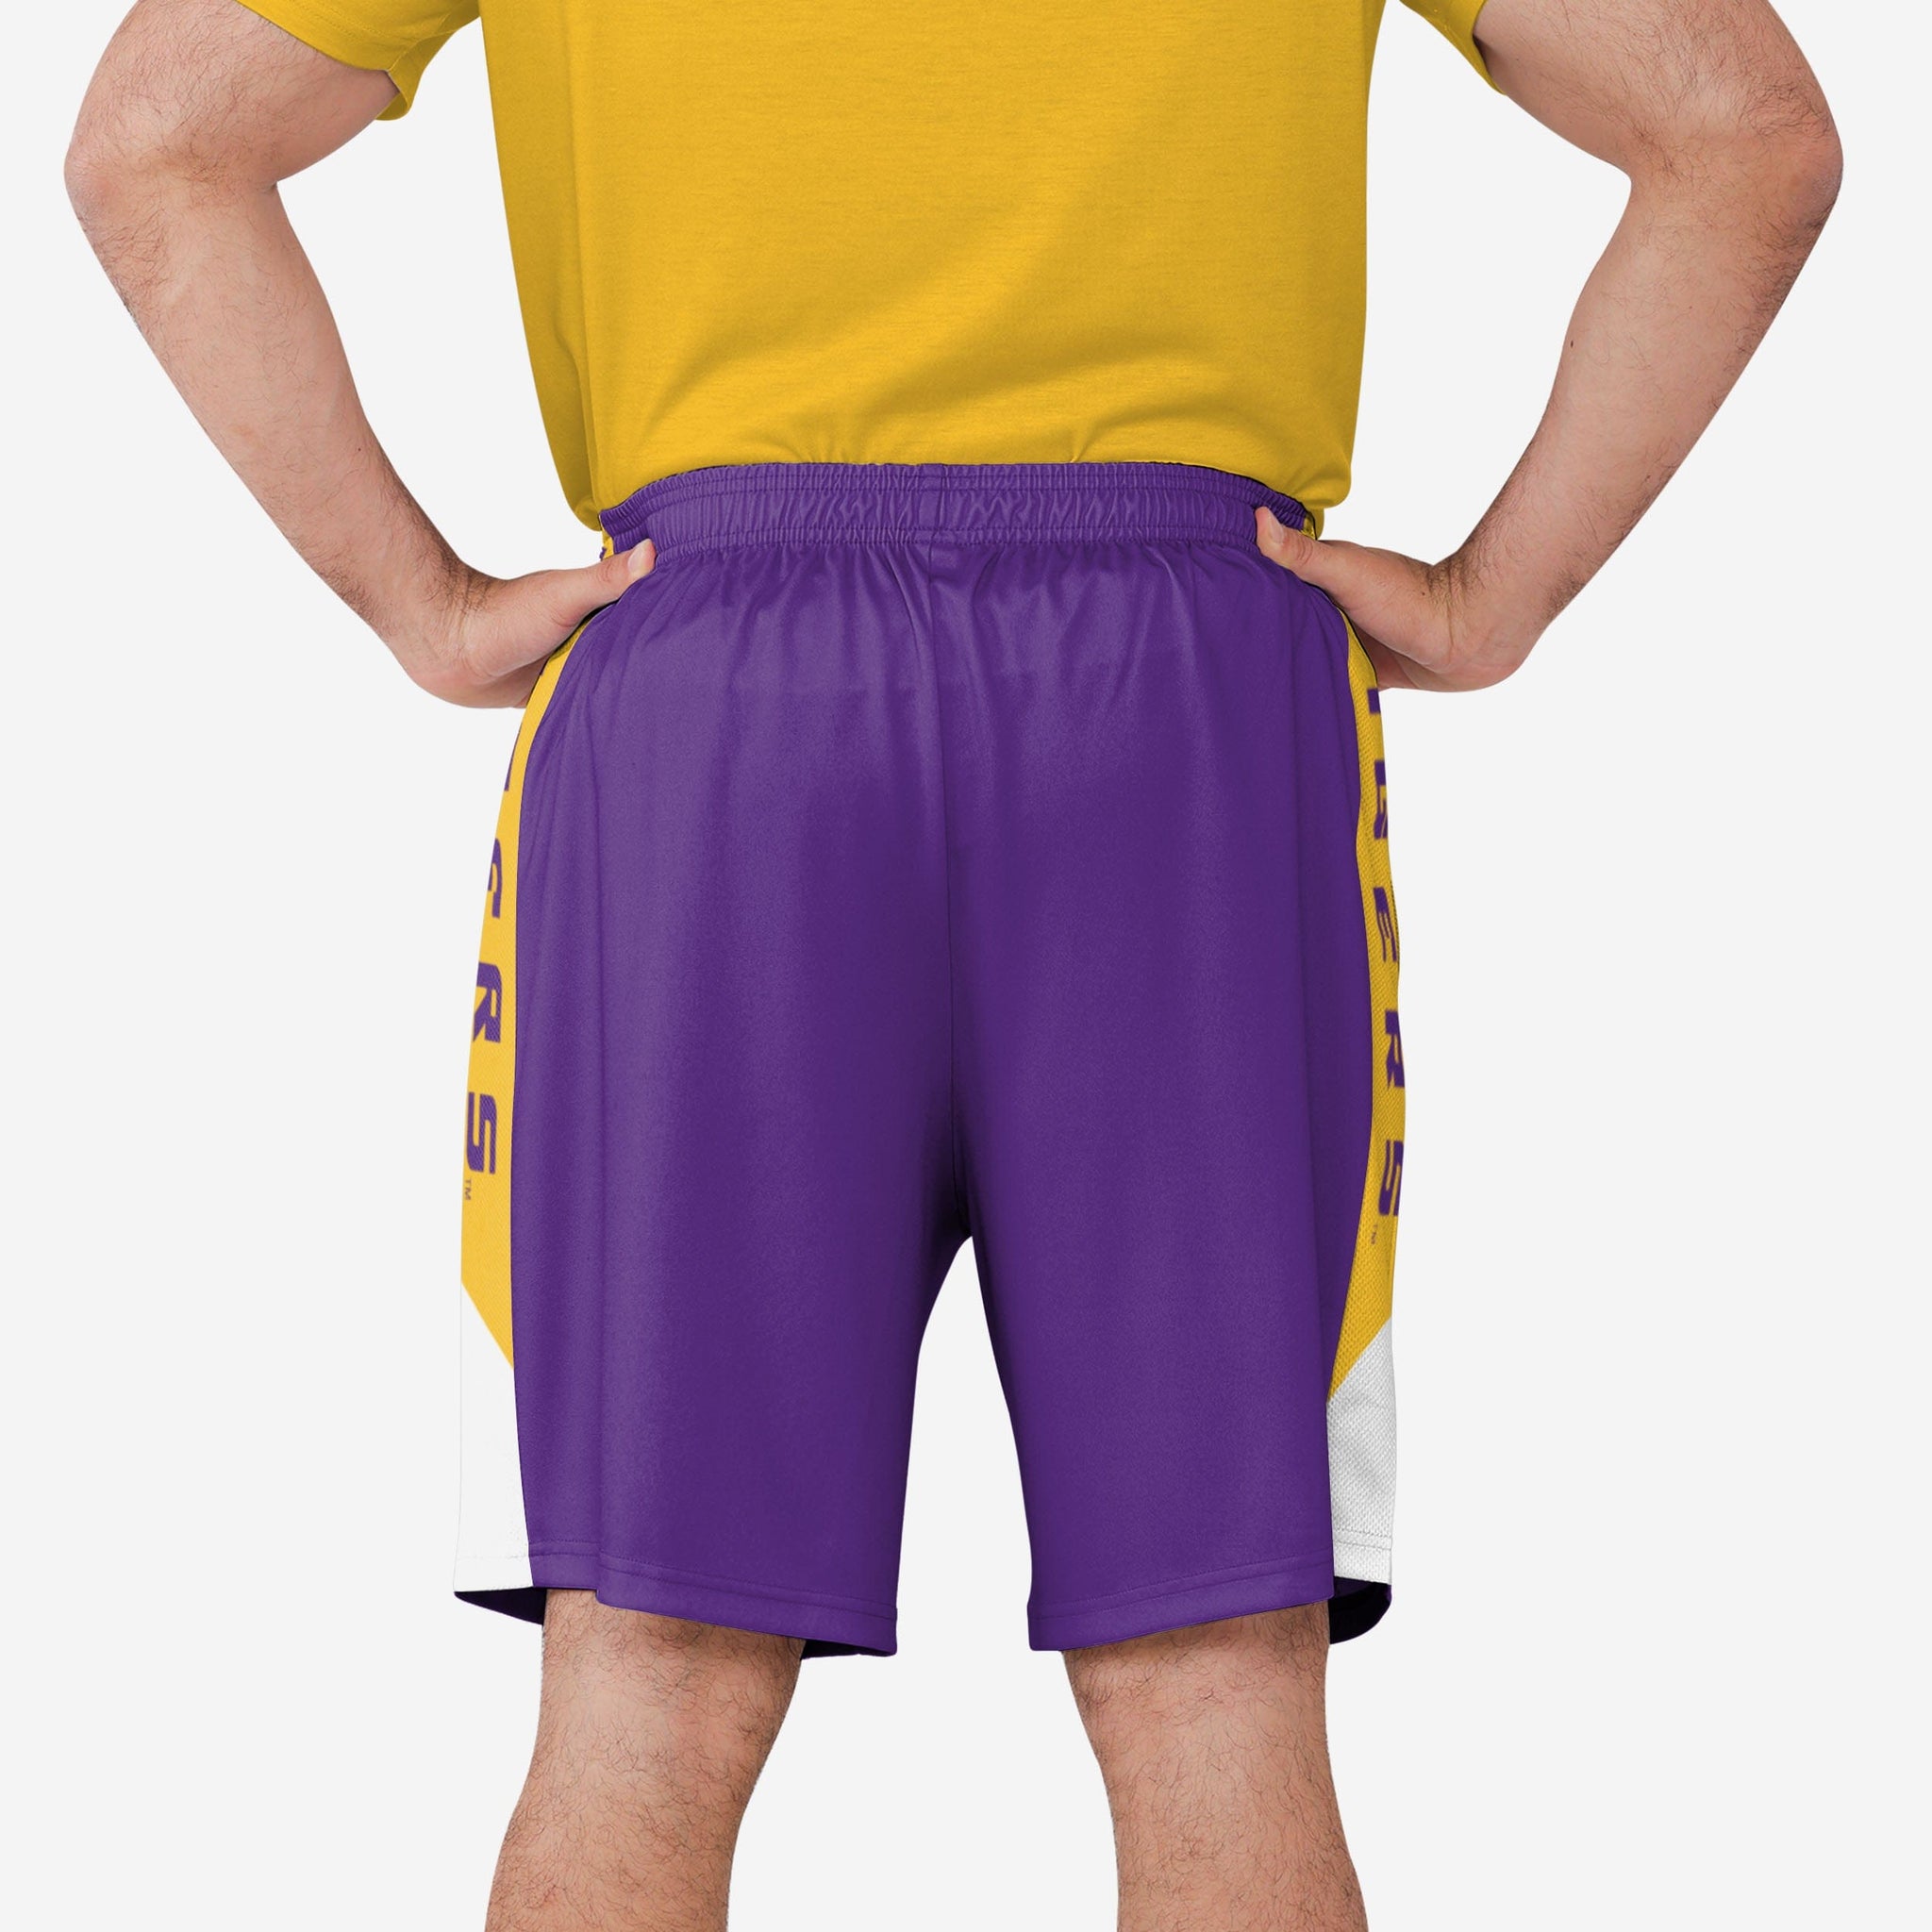 Official Oklahoma City Thunder Shorts, Basketball Shorts, Gym Shorts,  Compression Shorts